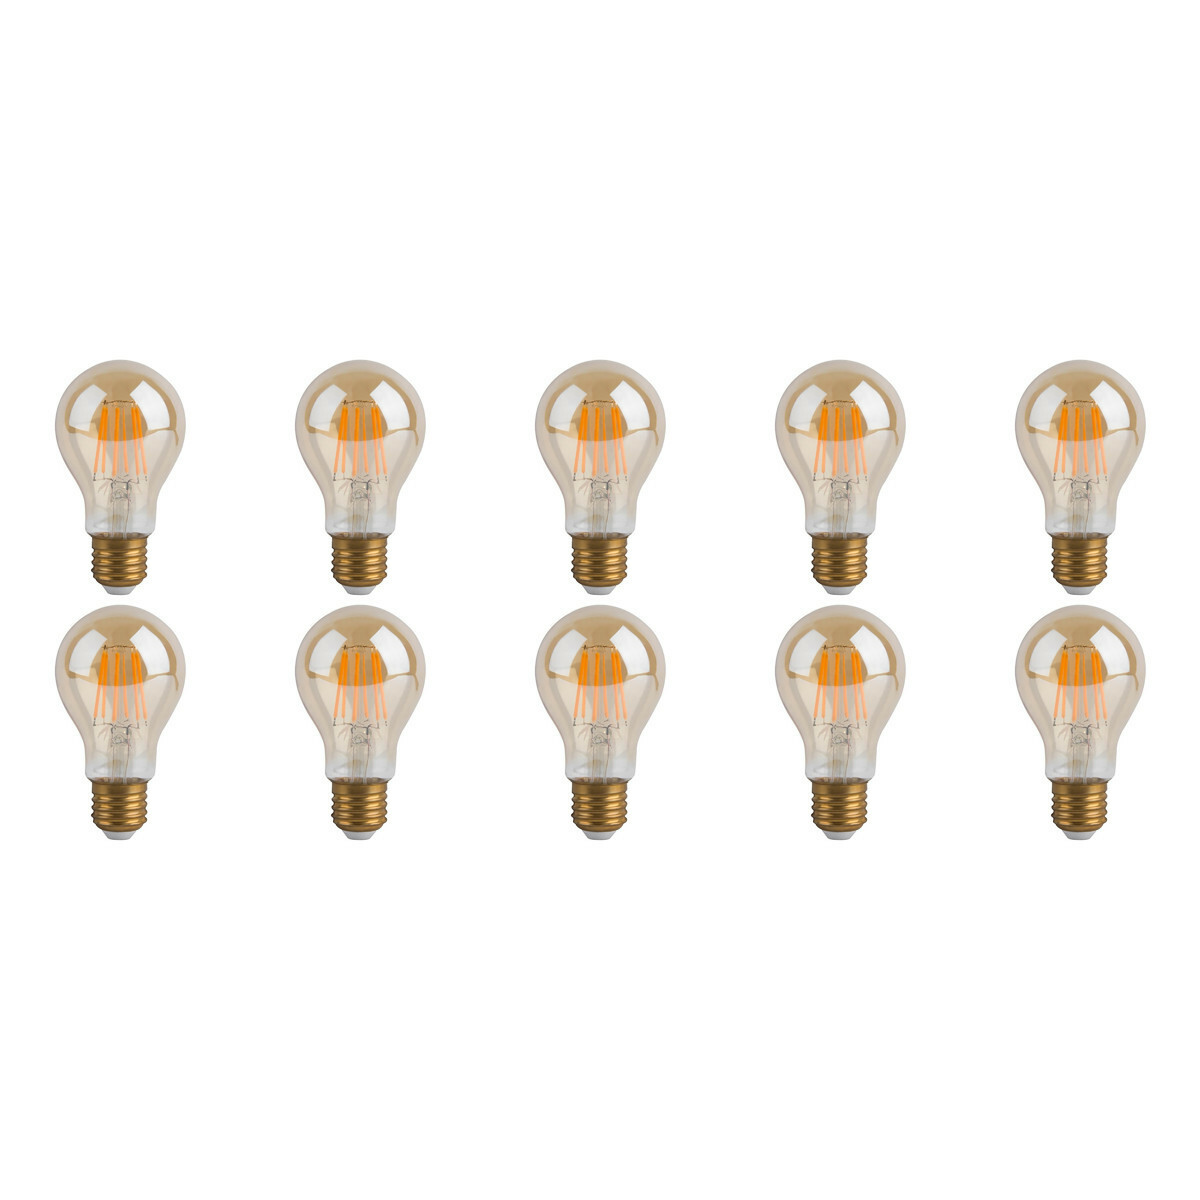 Noodlottig Reactor Becks Voordeelpak LED Lamp 10 Pack - Facto - Filament Bulb - E27 Fitting - Dimbaar  - 7W - Warm Wit 2700K | BES LED